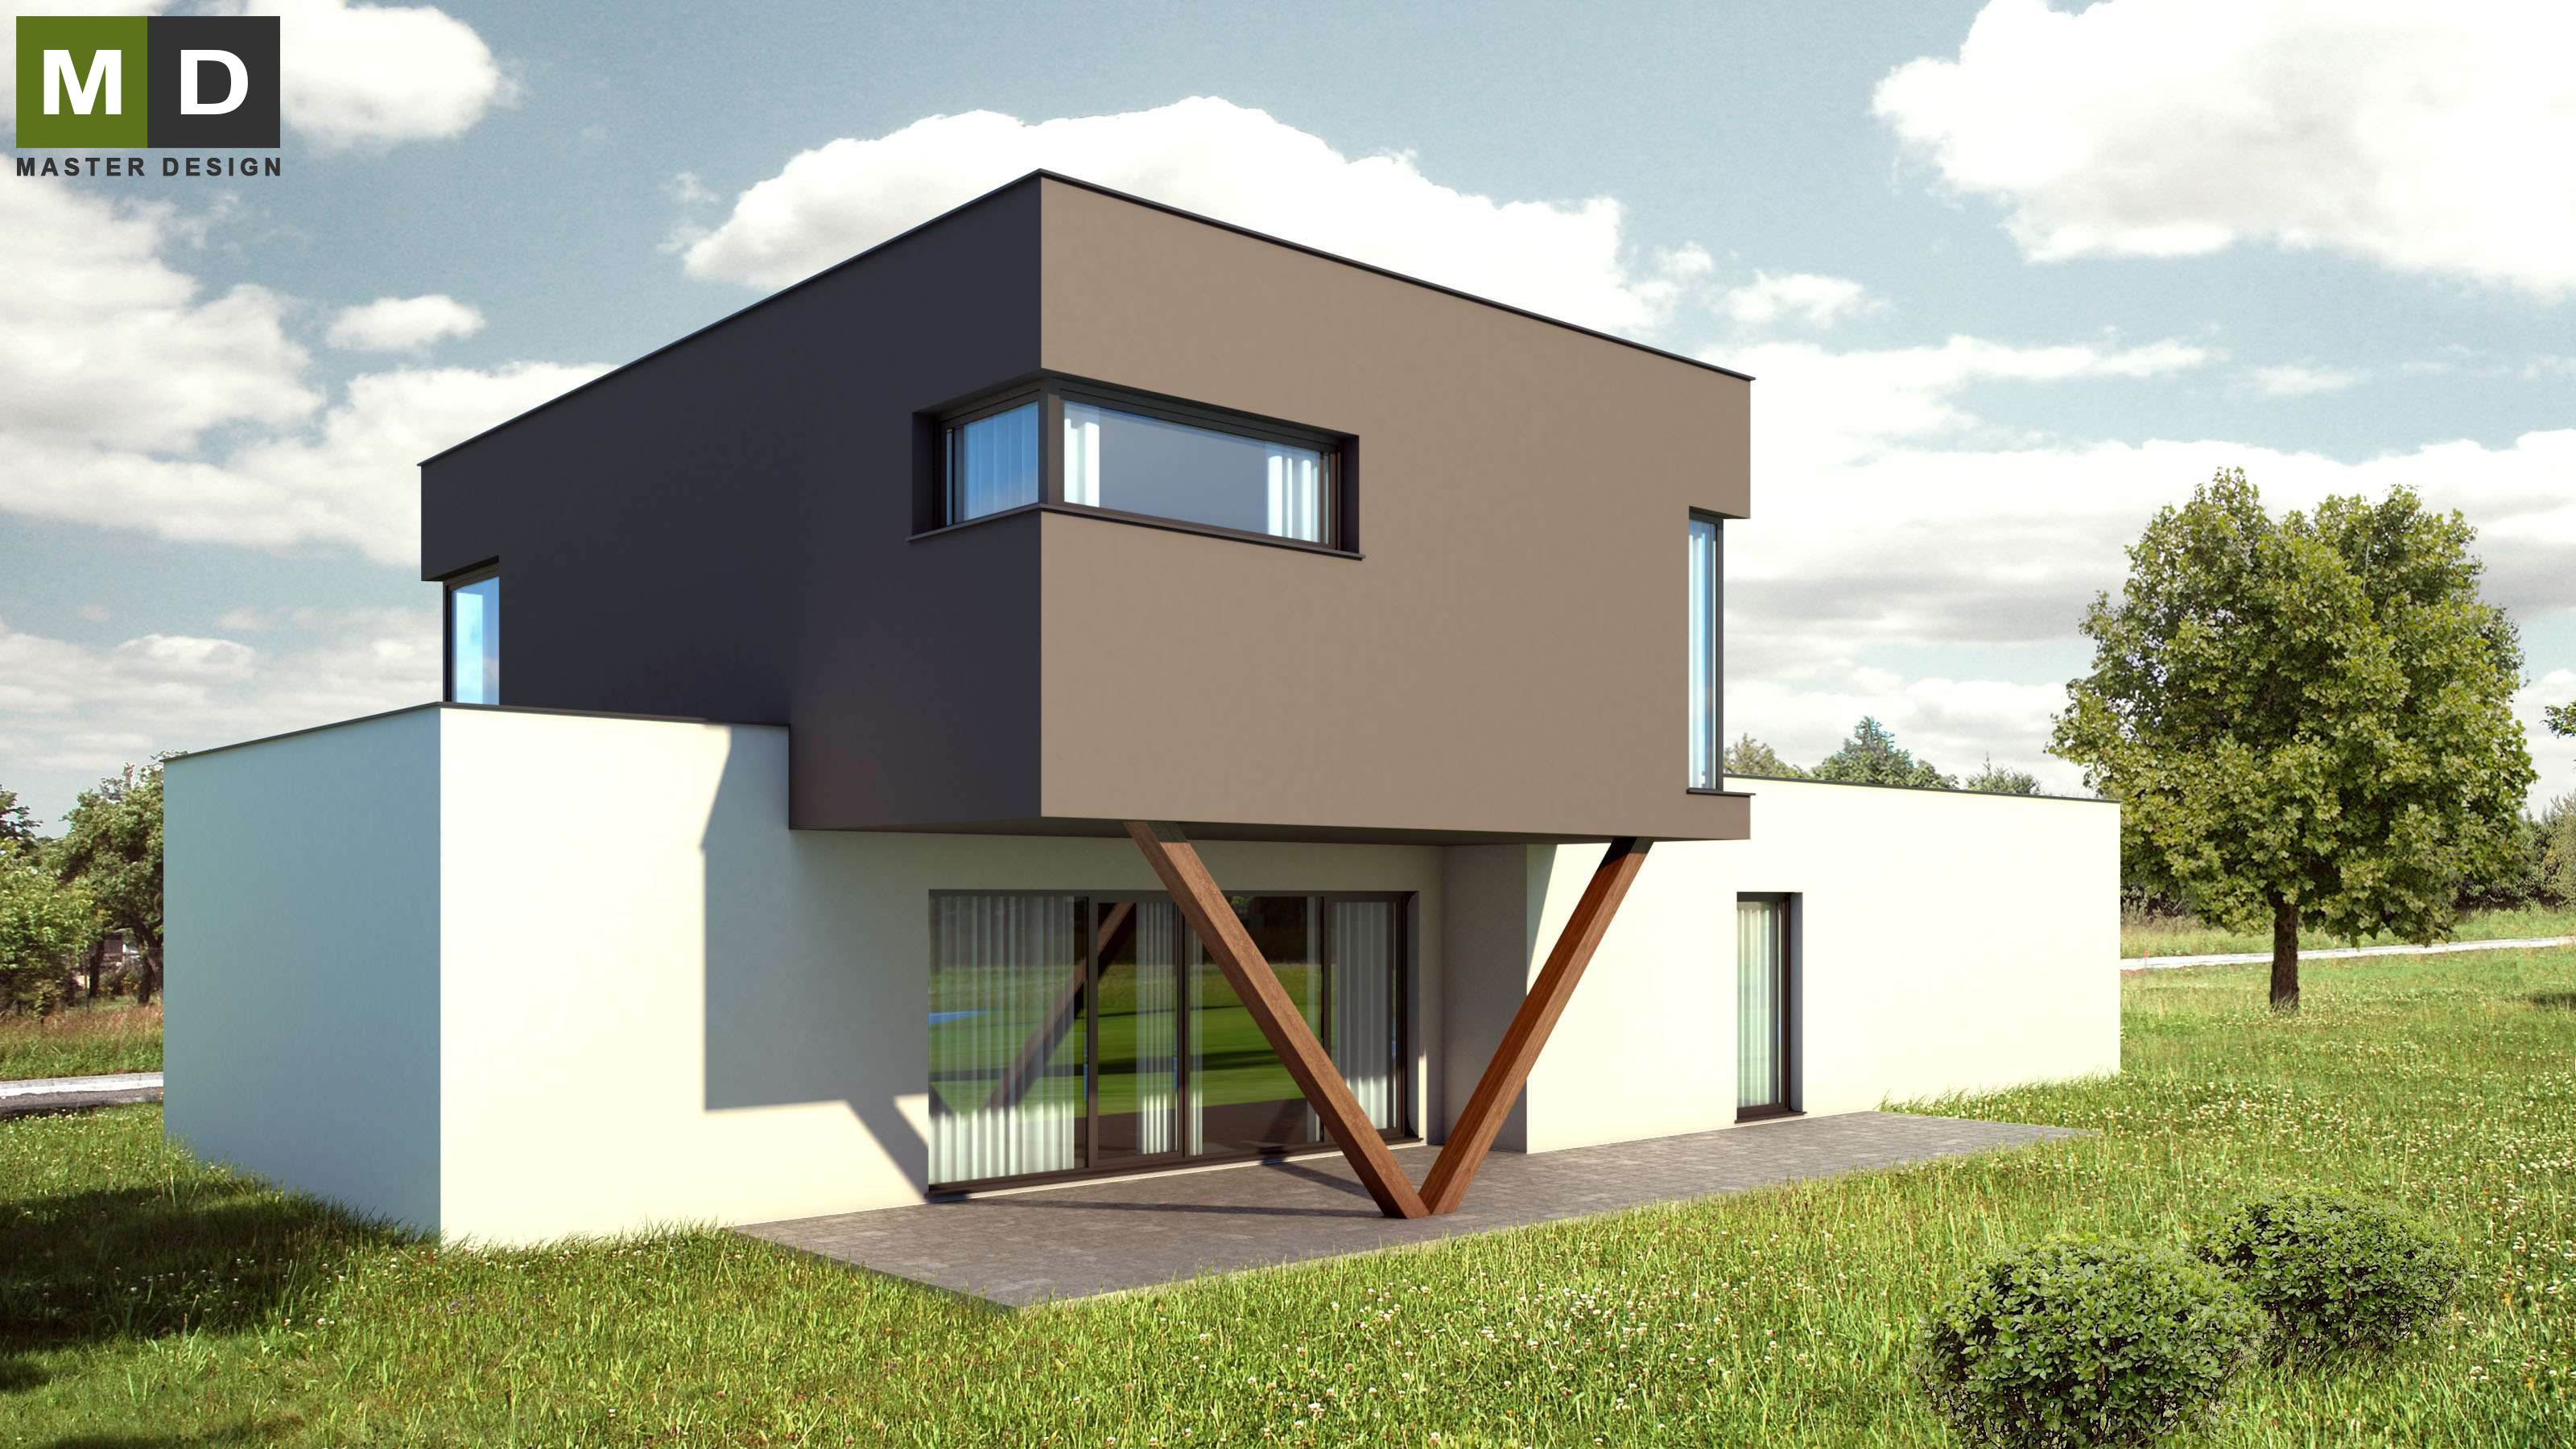 Dvoupatrová pasivní dřevostavba s plochou střechou - Developerský projekt do Švýcarska - Vizualizace 2